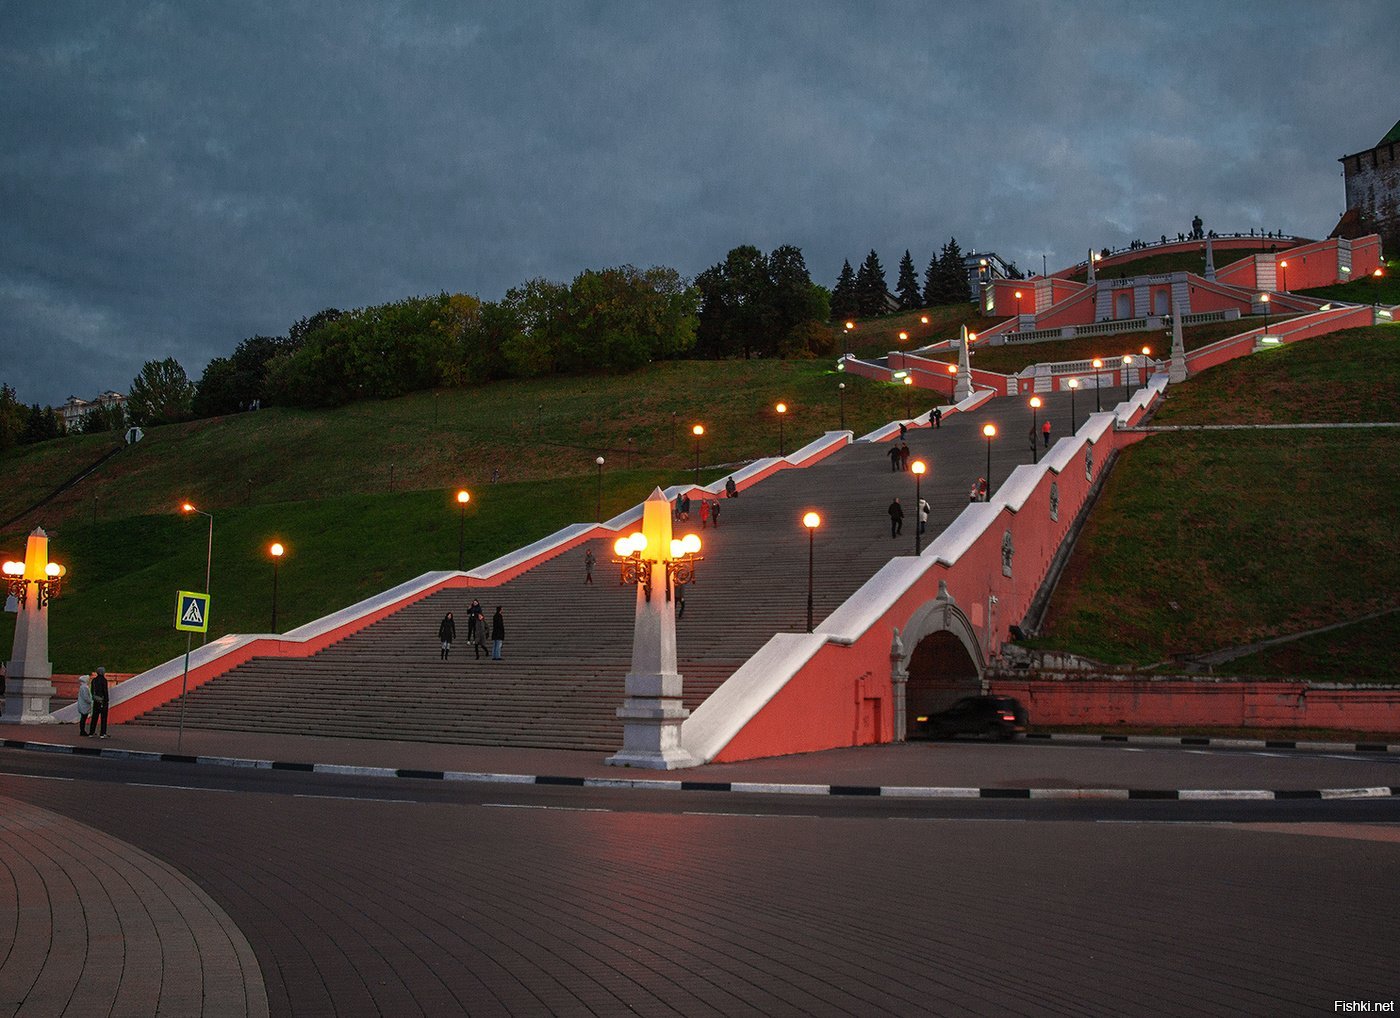 Фотографии чкаловской лестницы в нижнем новгороде